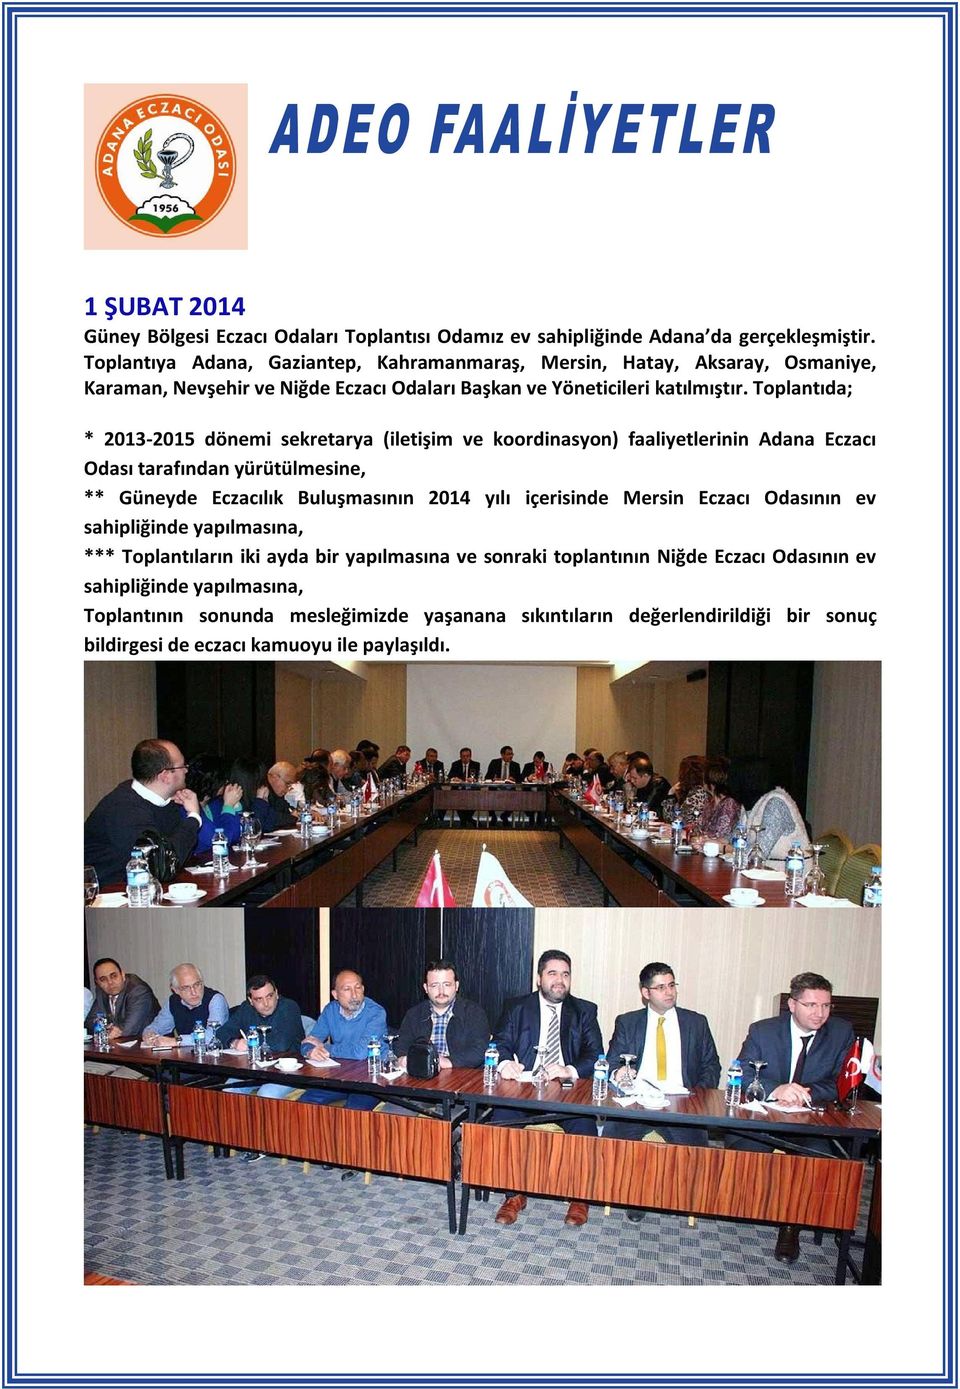 Toplantıda; * 2013-2015 dönemi sekretarya (iletişim ve koordinasyon) faaliyetlerinin Adana Eczacı Odası tarafından yürütülmesine, ** Güneyde Eczacılık Buluşmasının 2014 yılı içerisinde